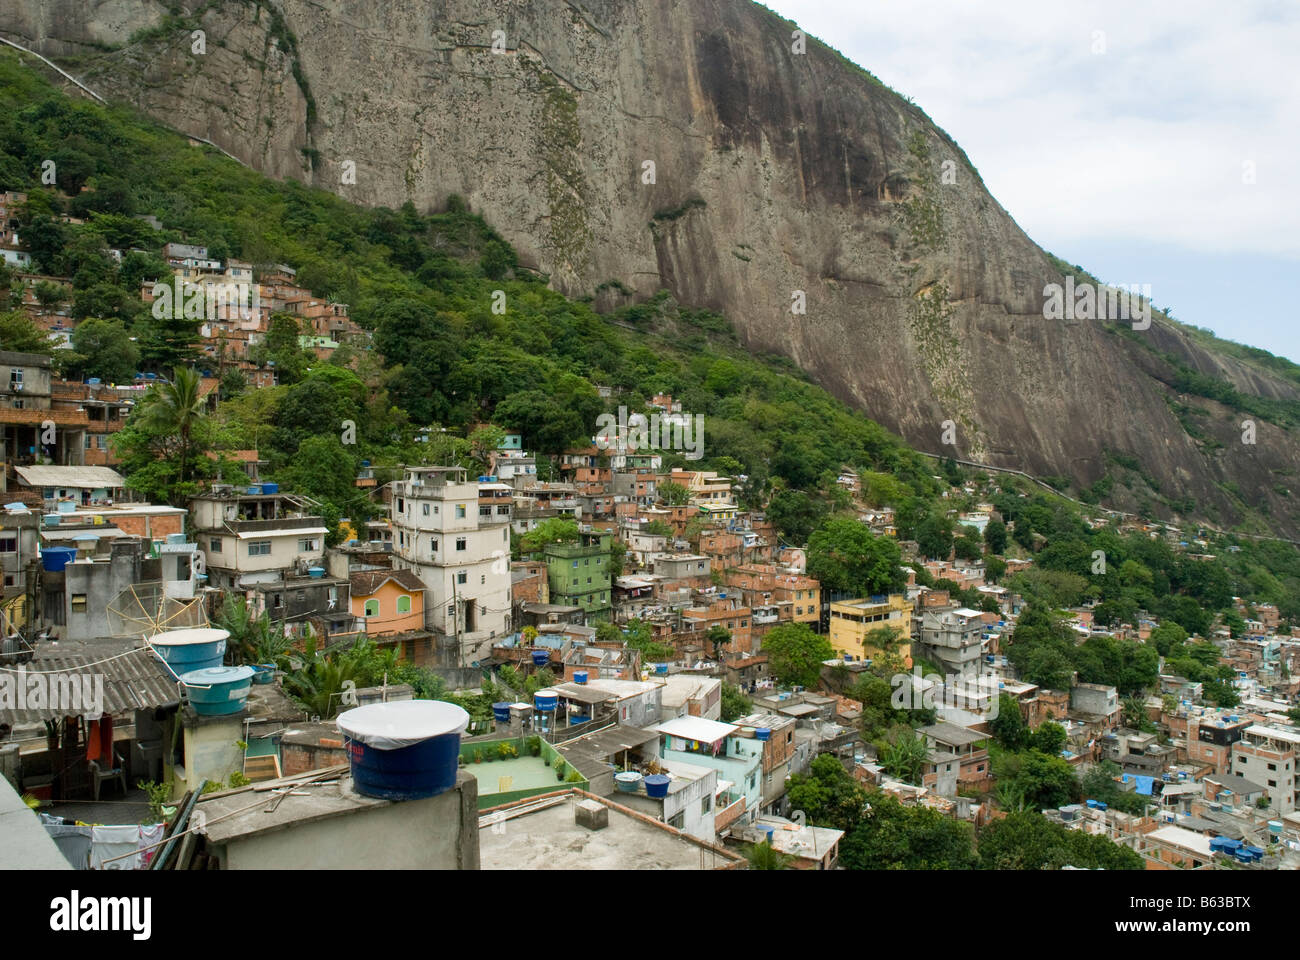 Rocinha - the largest favela / slum in Rio de Janeiro, Brazil Stock Photo